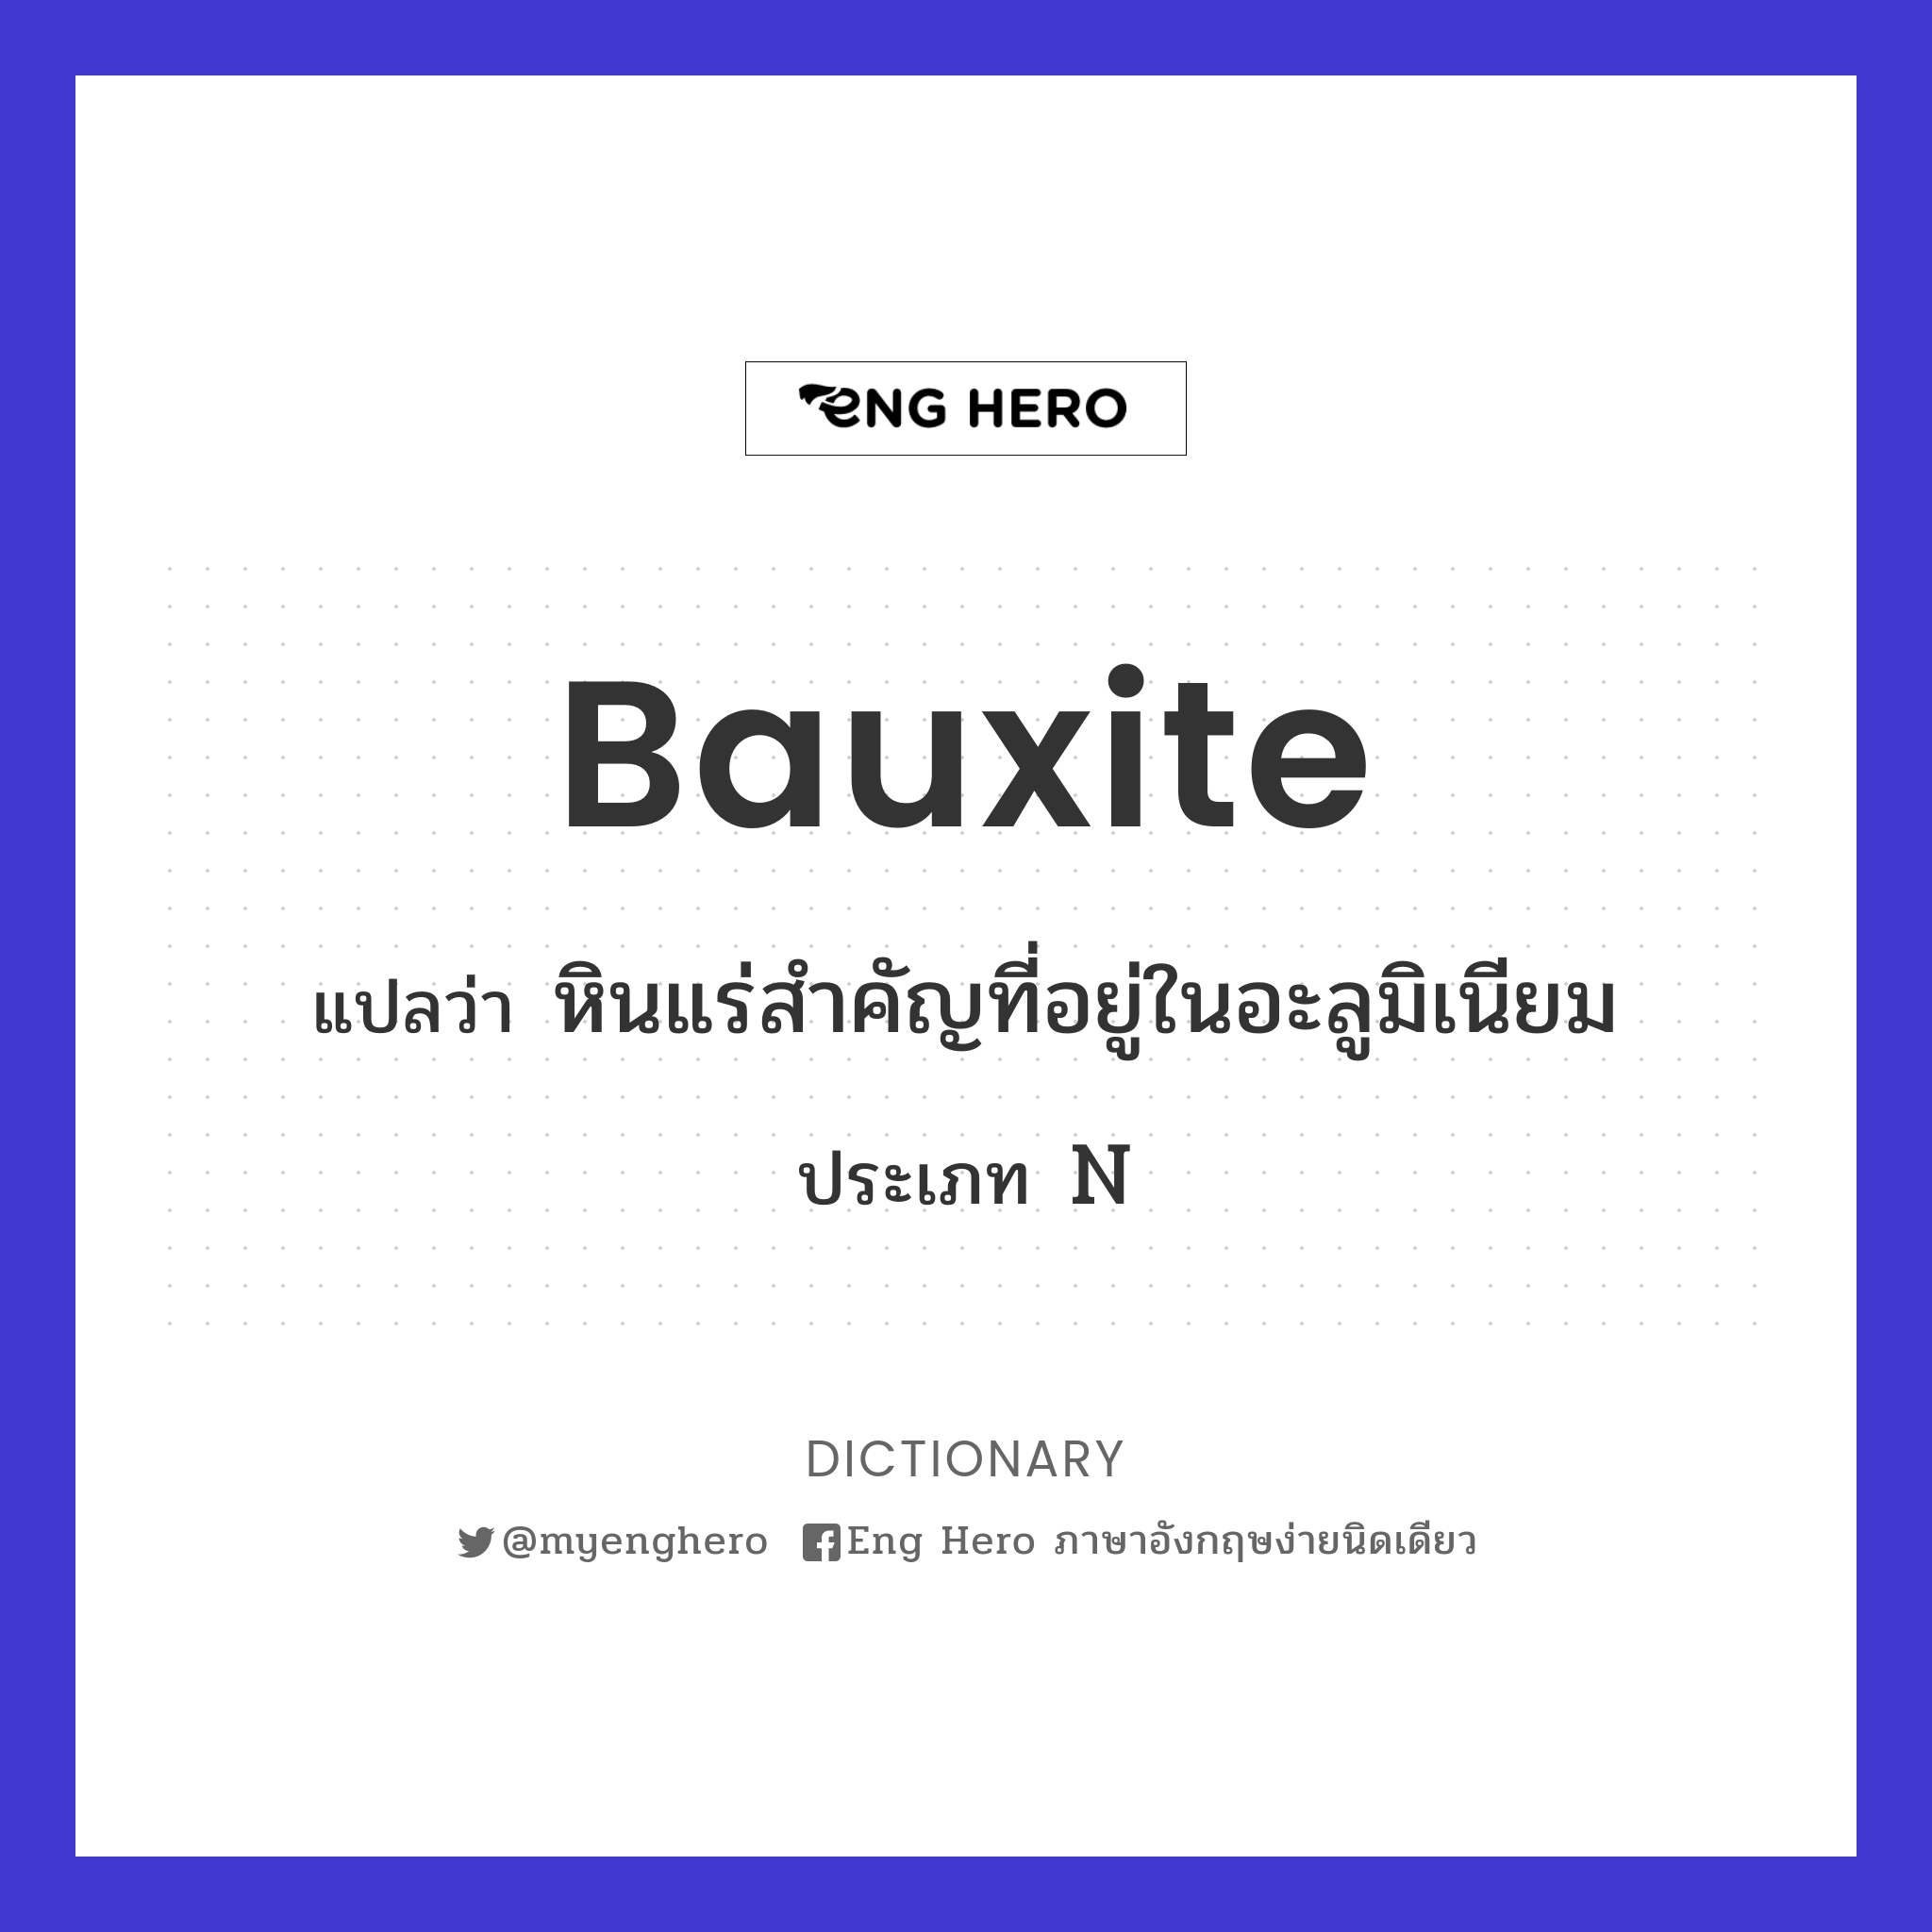 bauxite